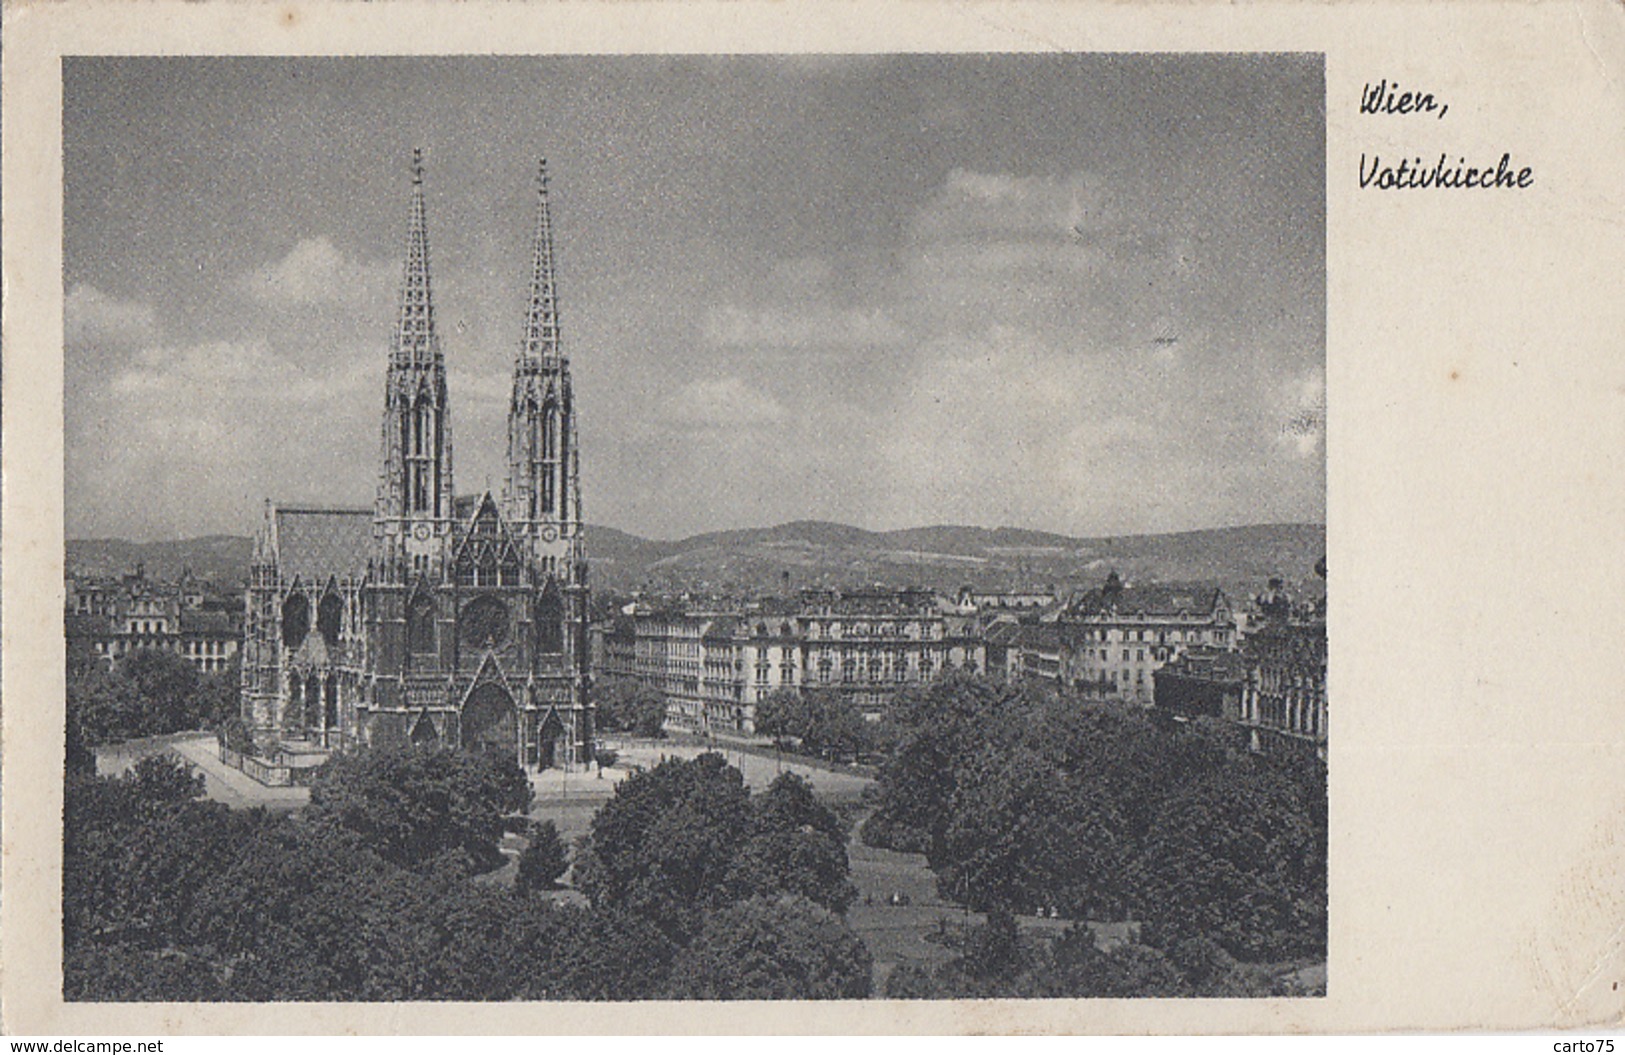 Autriche - Wien - Votivkirche - Postmarked Poste Aux Armées 1949 - Au Château Du Pré D'Auge La Boissière 14 - Églises